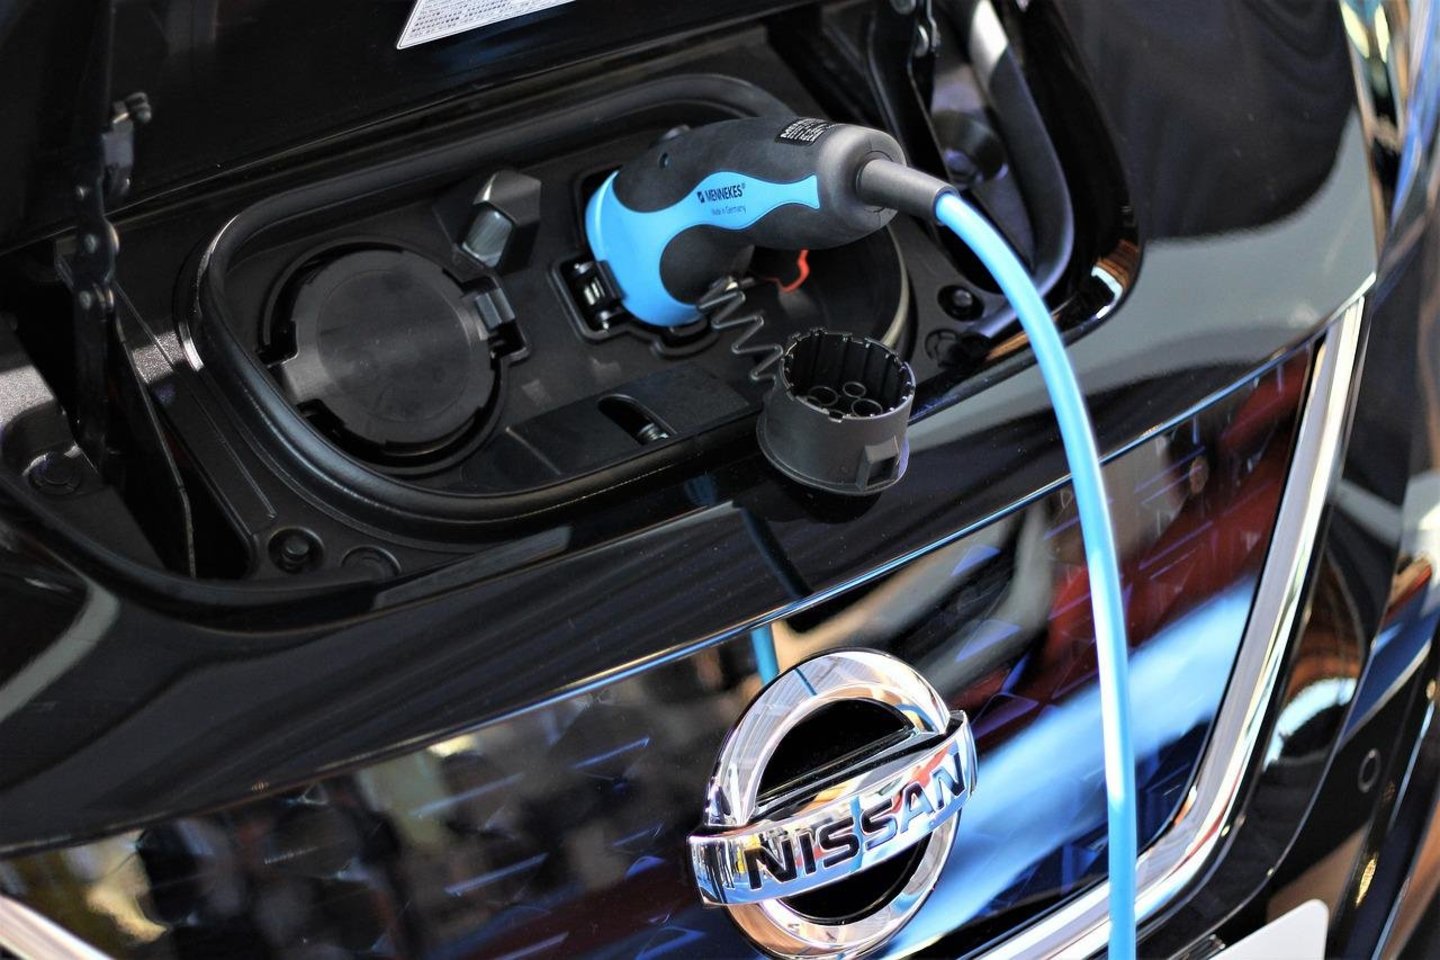 Vieno pirmųjų masinių elektromobilių pasaulyje „Nissan Leaf“ gali būti paskutinė modelio karta.<br>www.pixabay.com nuotr.